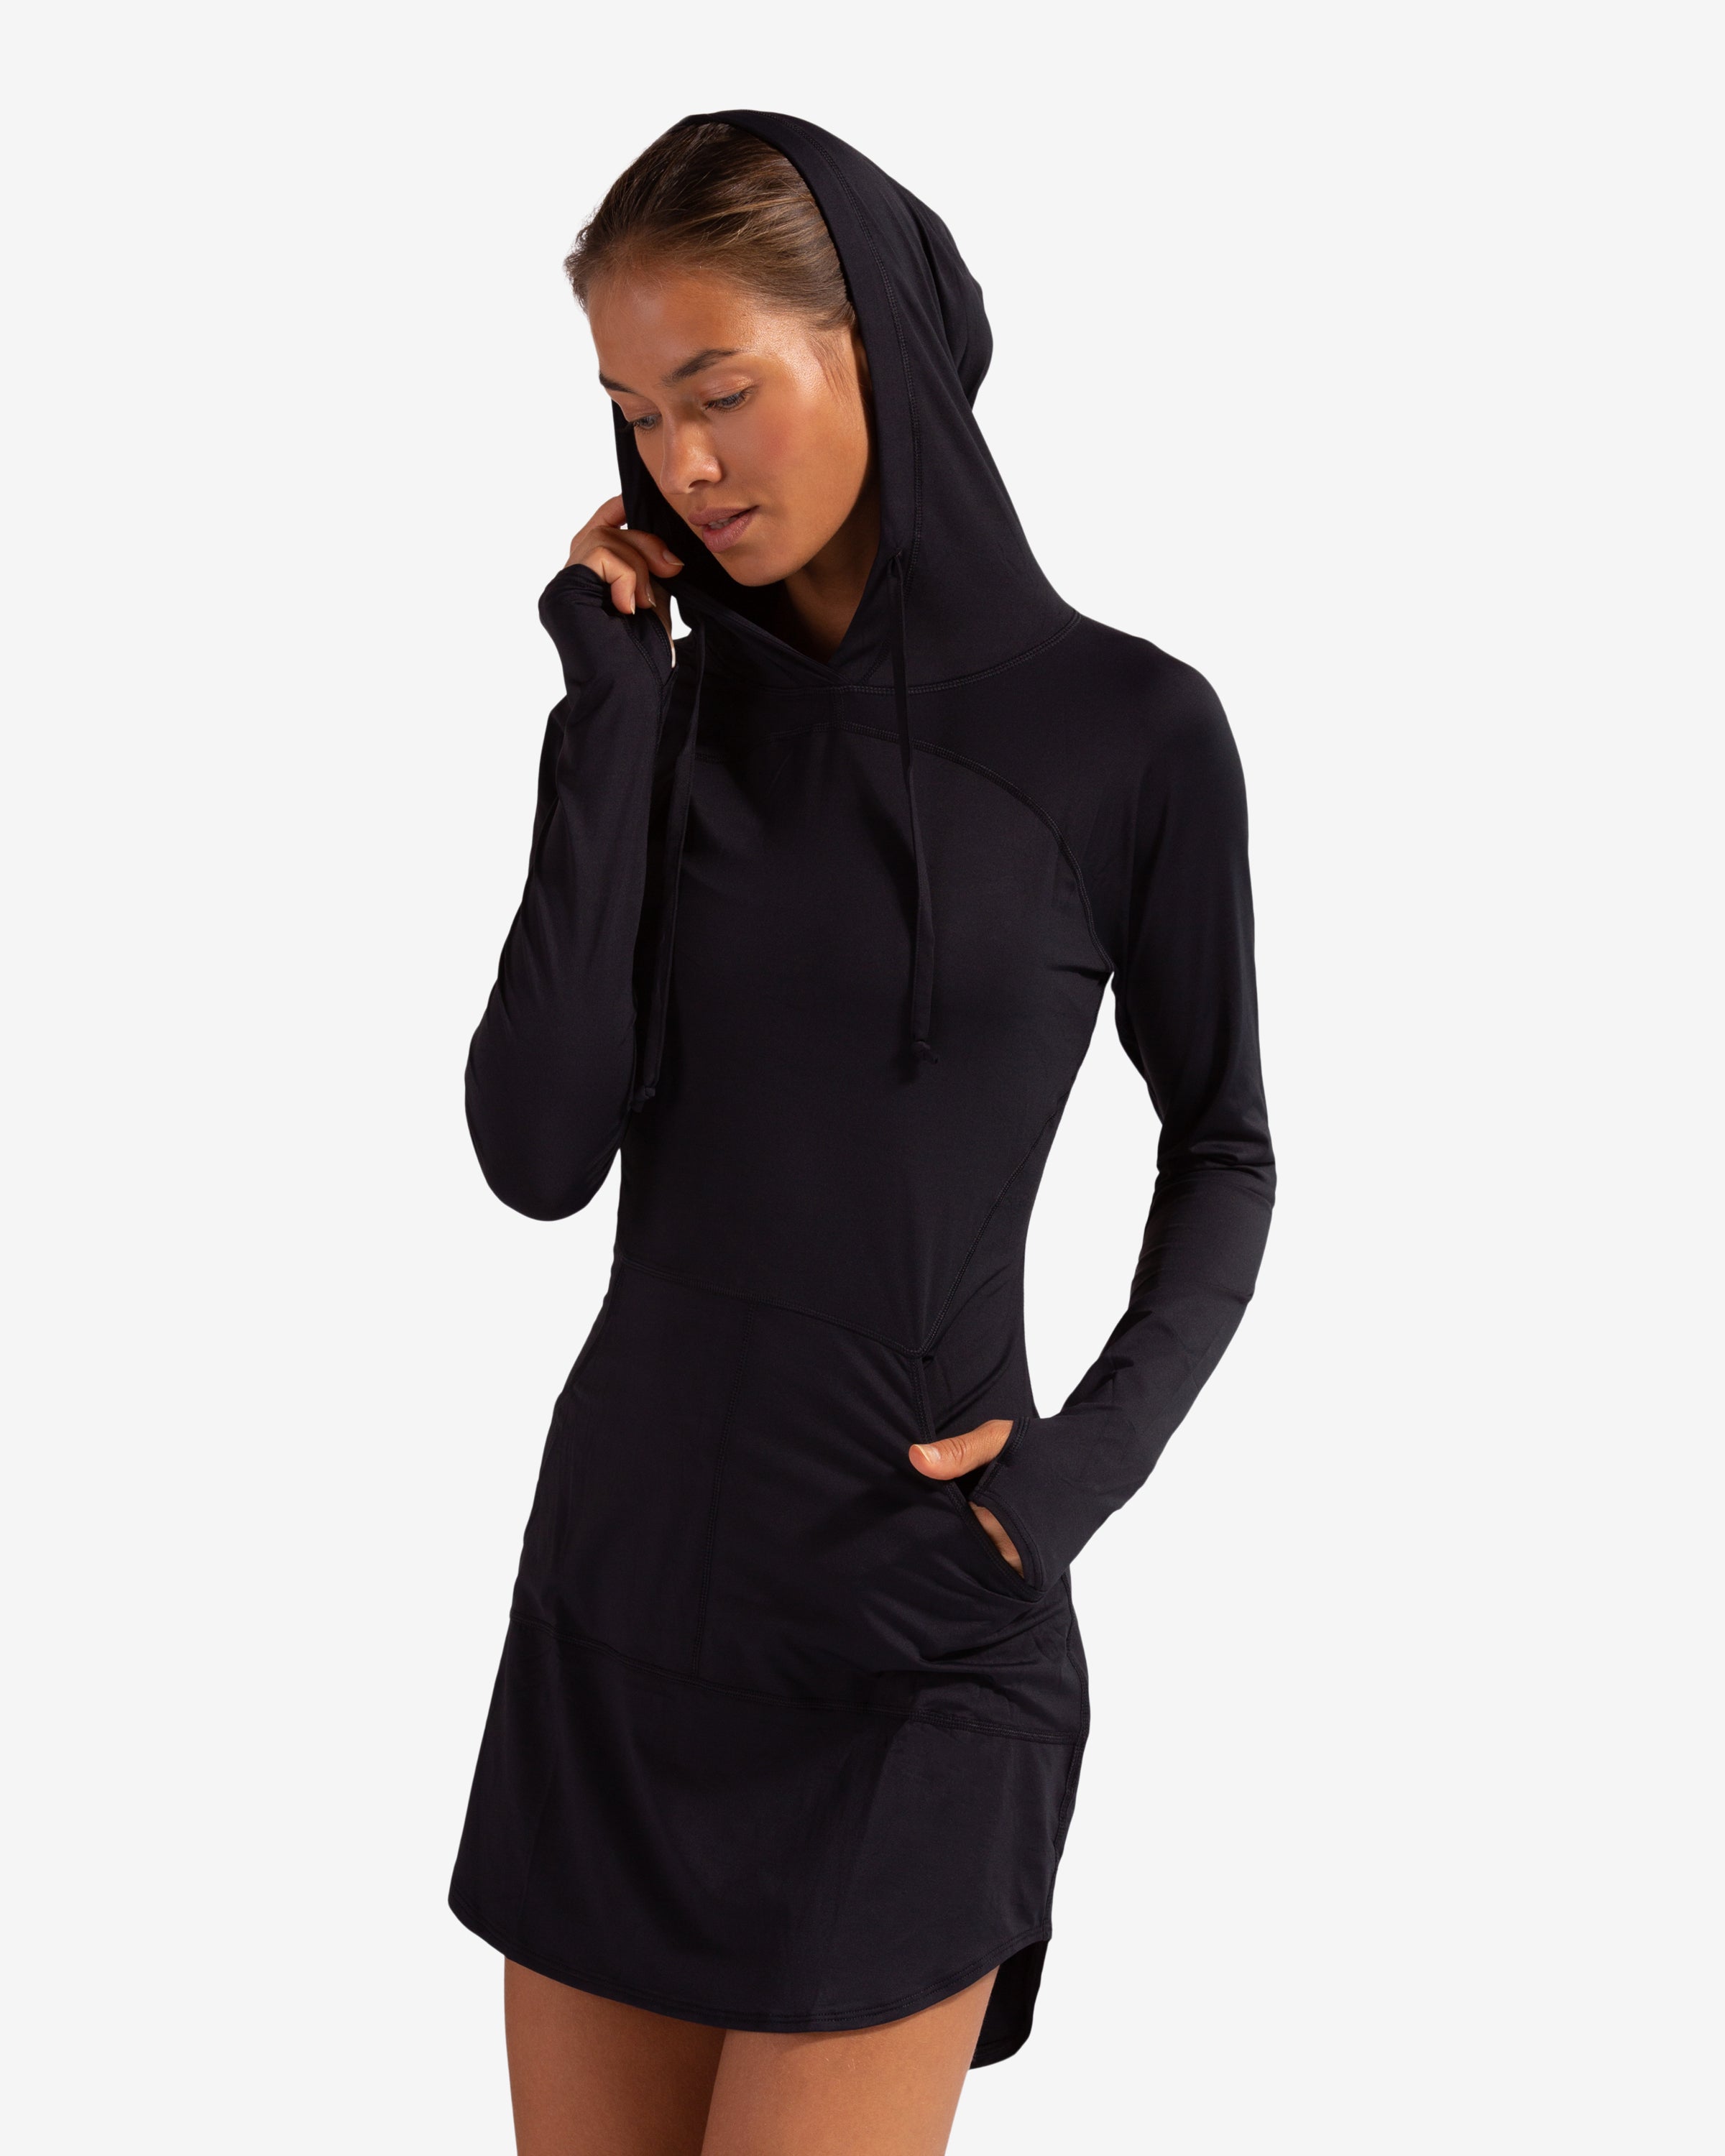 Fabletics Women's Yukon Hooded Sweatshirt Dress Black Size Small